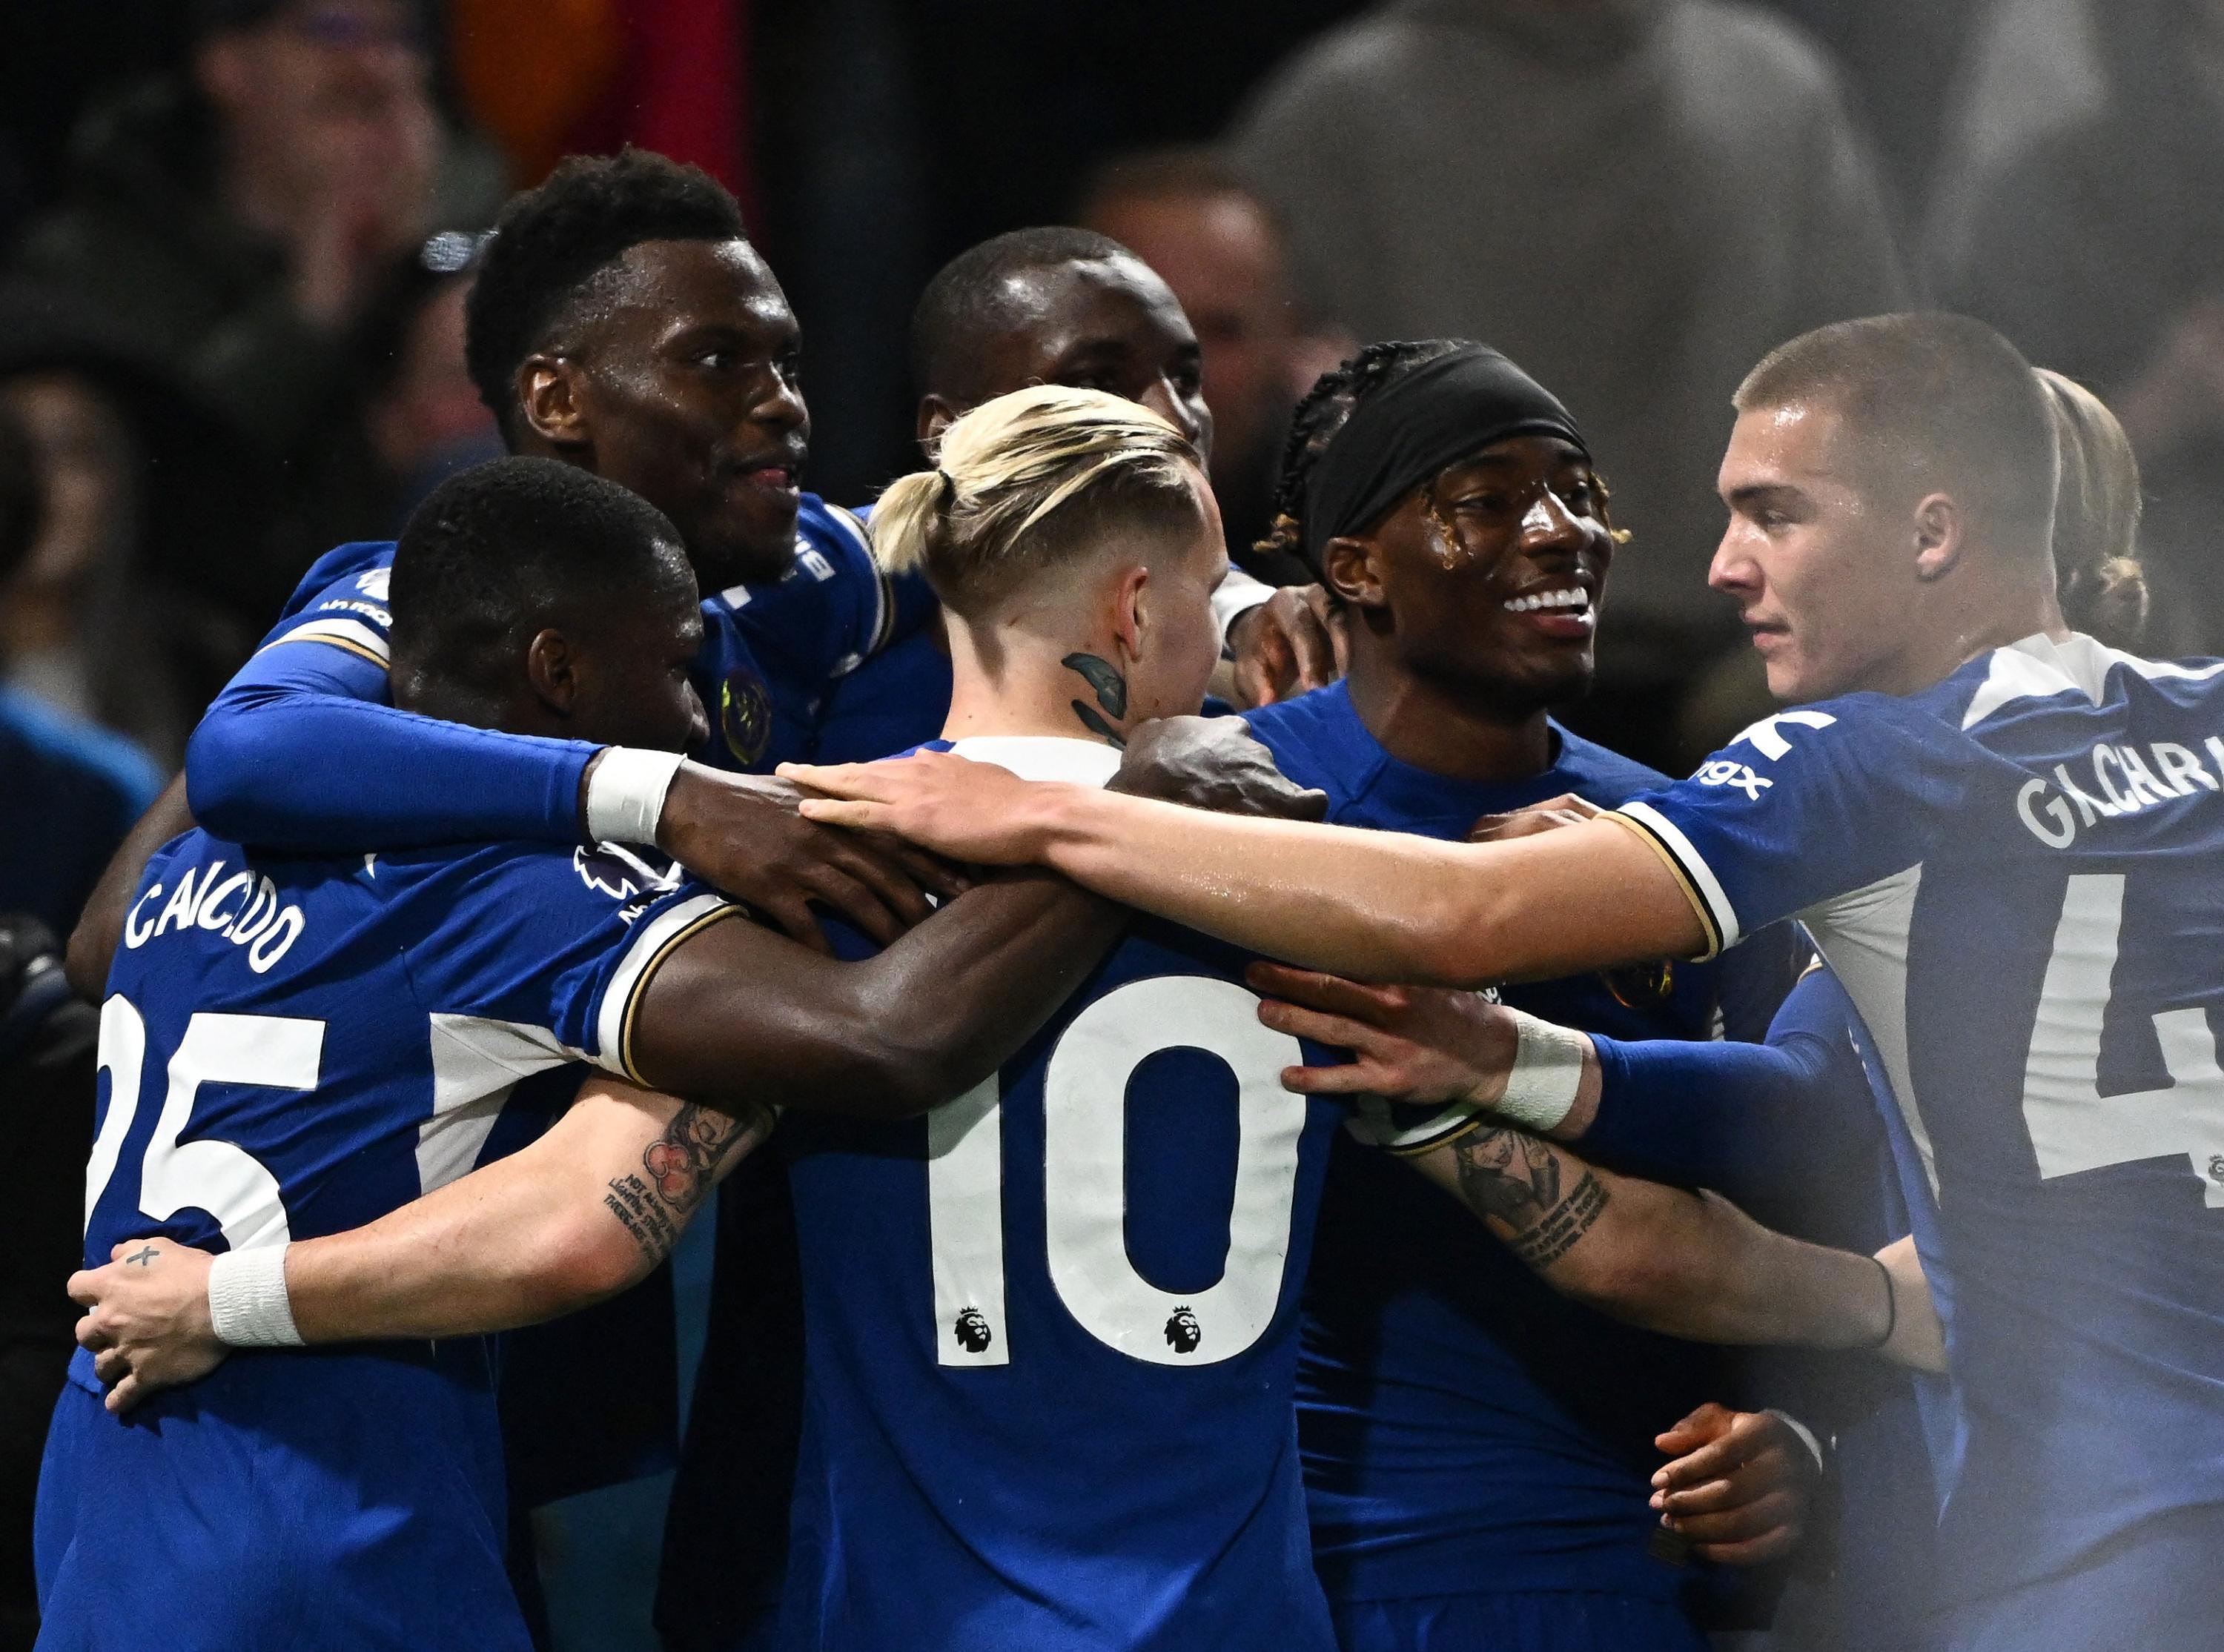 Premier League: Chelsea wins derby against Tottenham